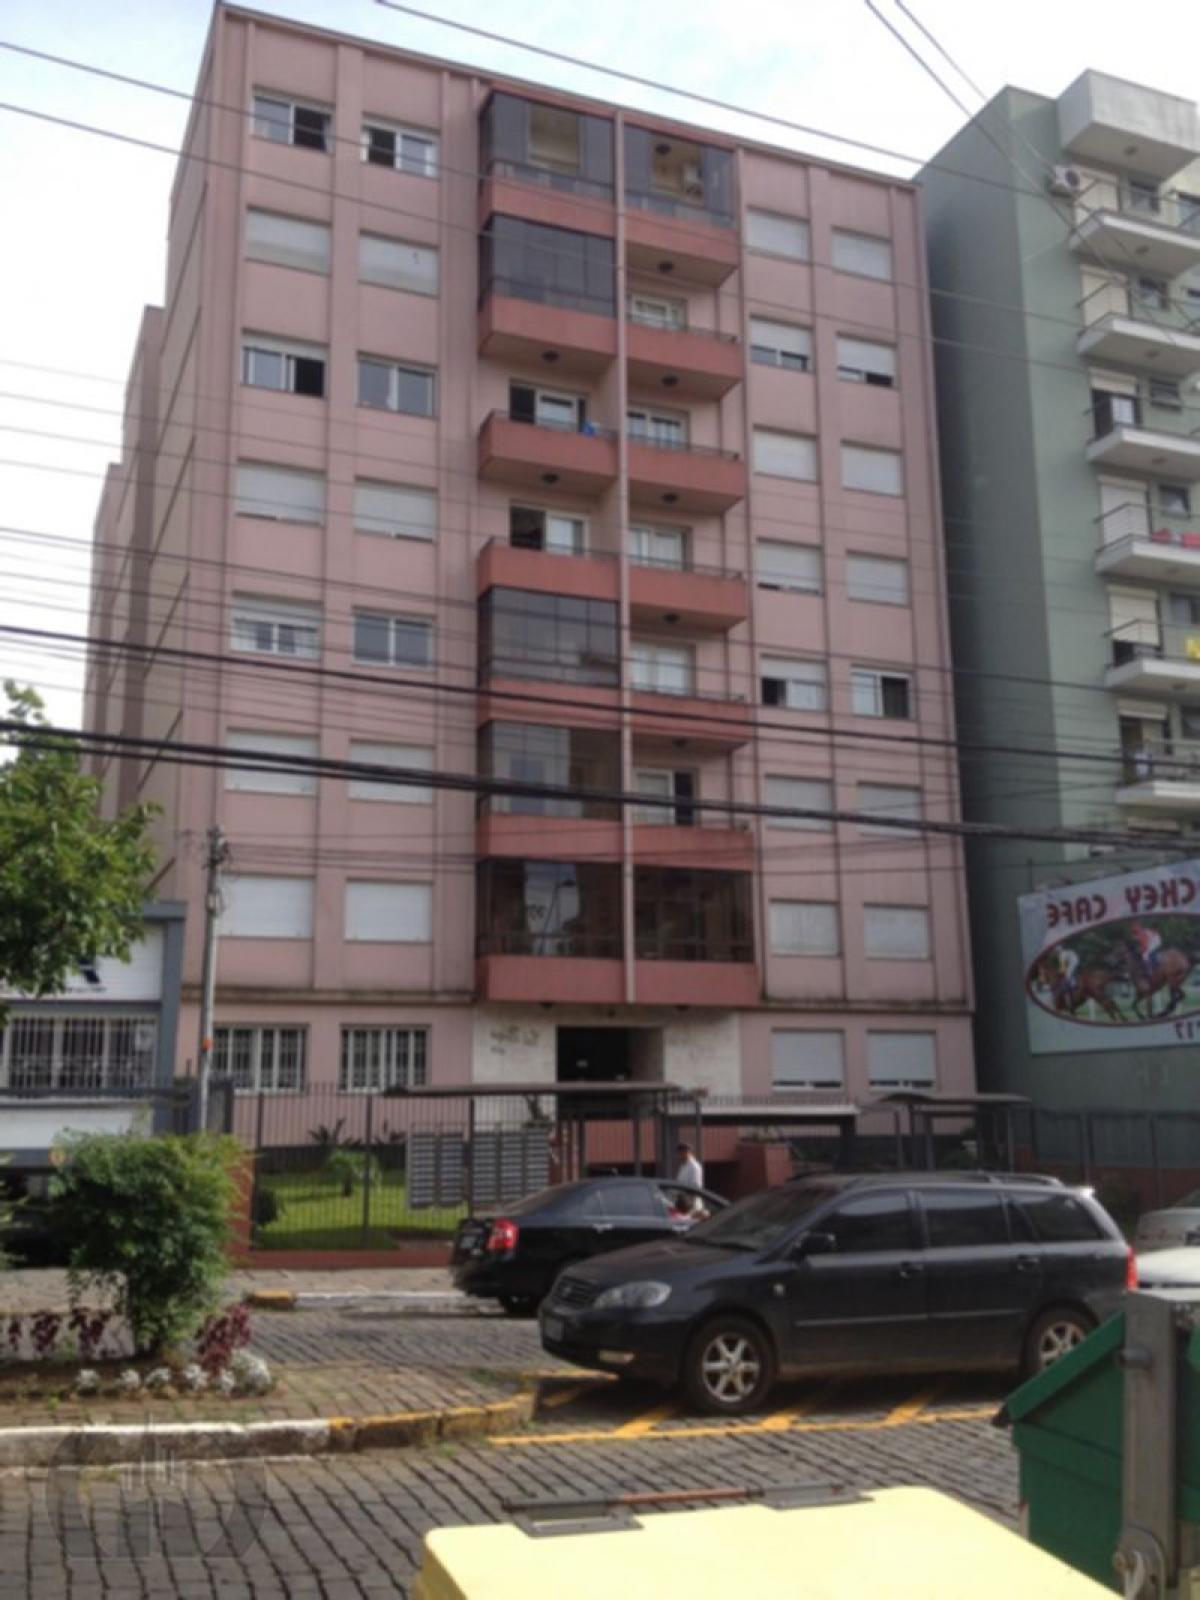 Picture of Apartment For Sale in Caxias Do Sul, Rio Grande do Sul, Brazil